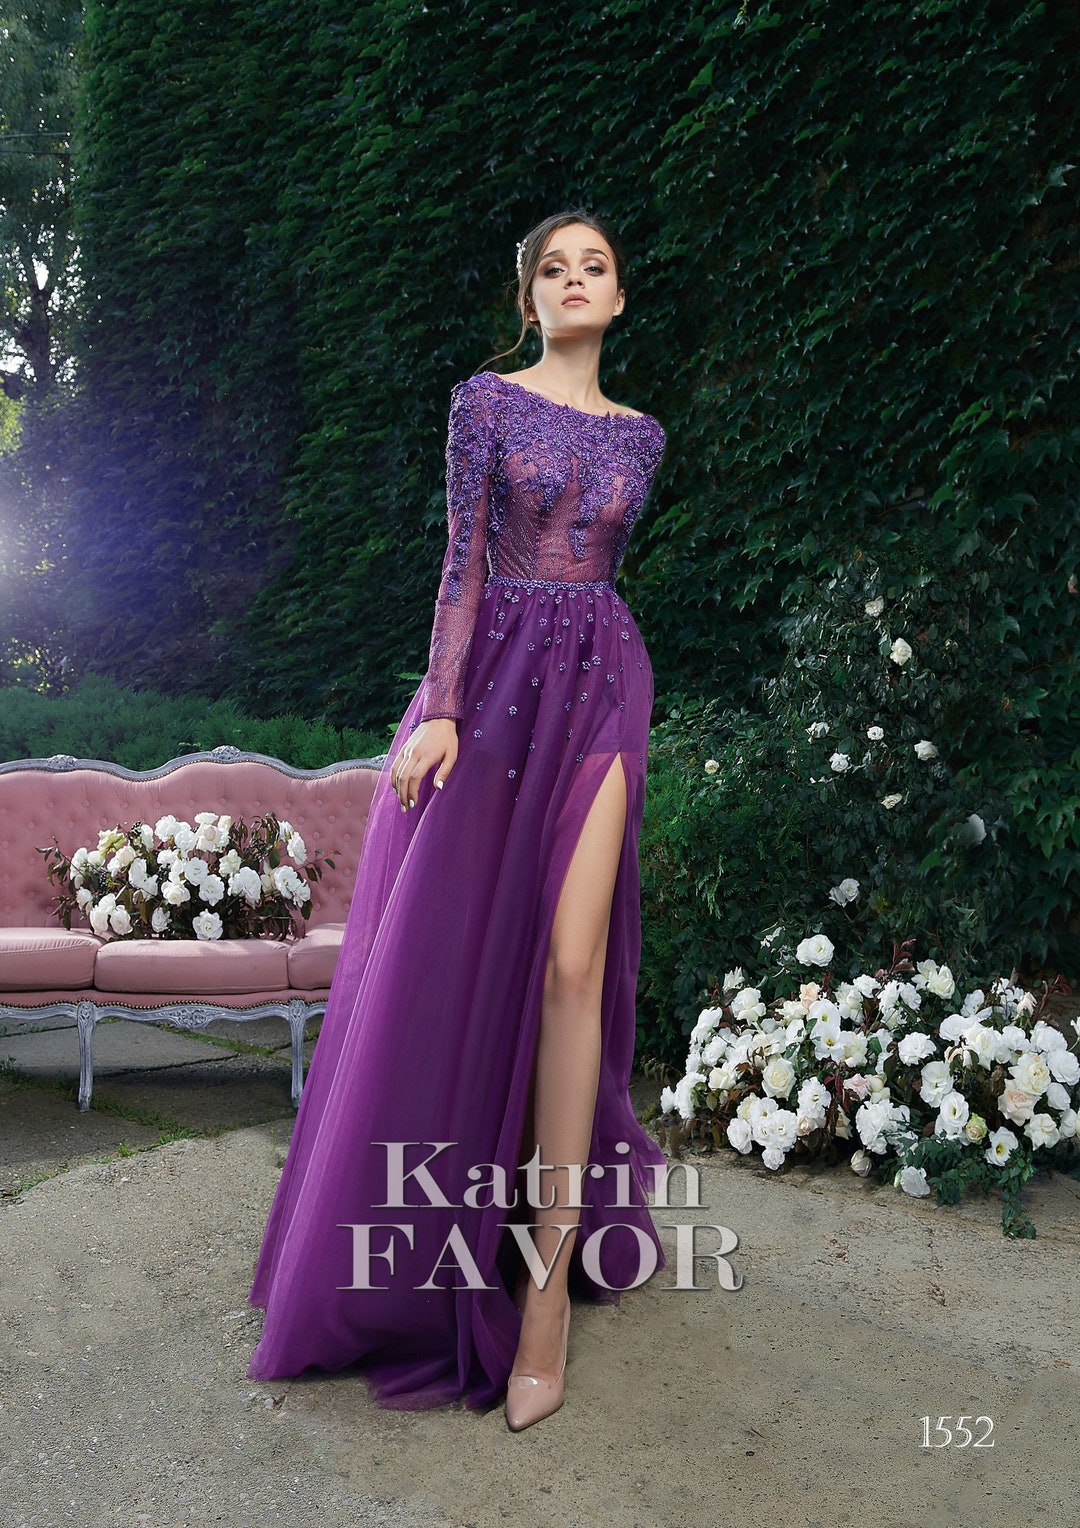 Pløje indre kindben Purple Formal Dress Tulle Dress Women Embroidered Evening Gown - Etsy